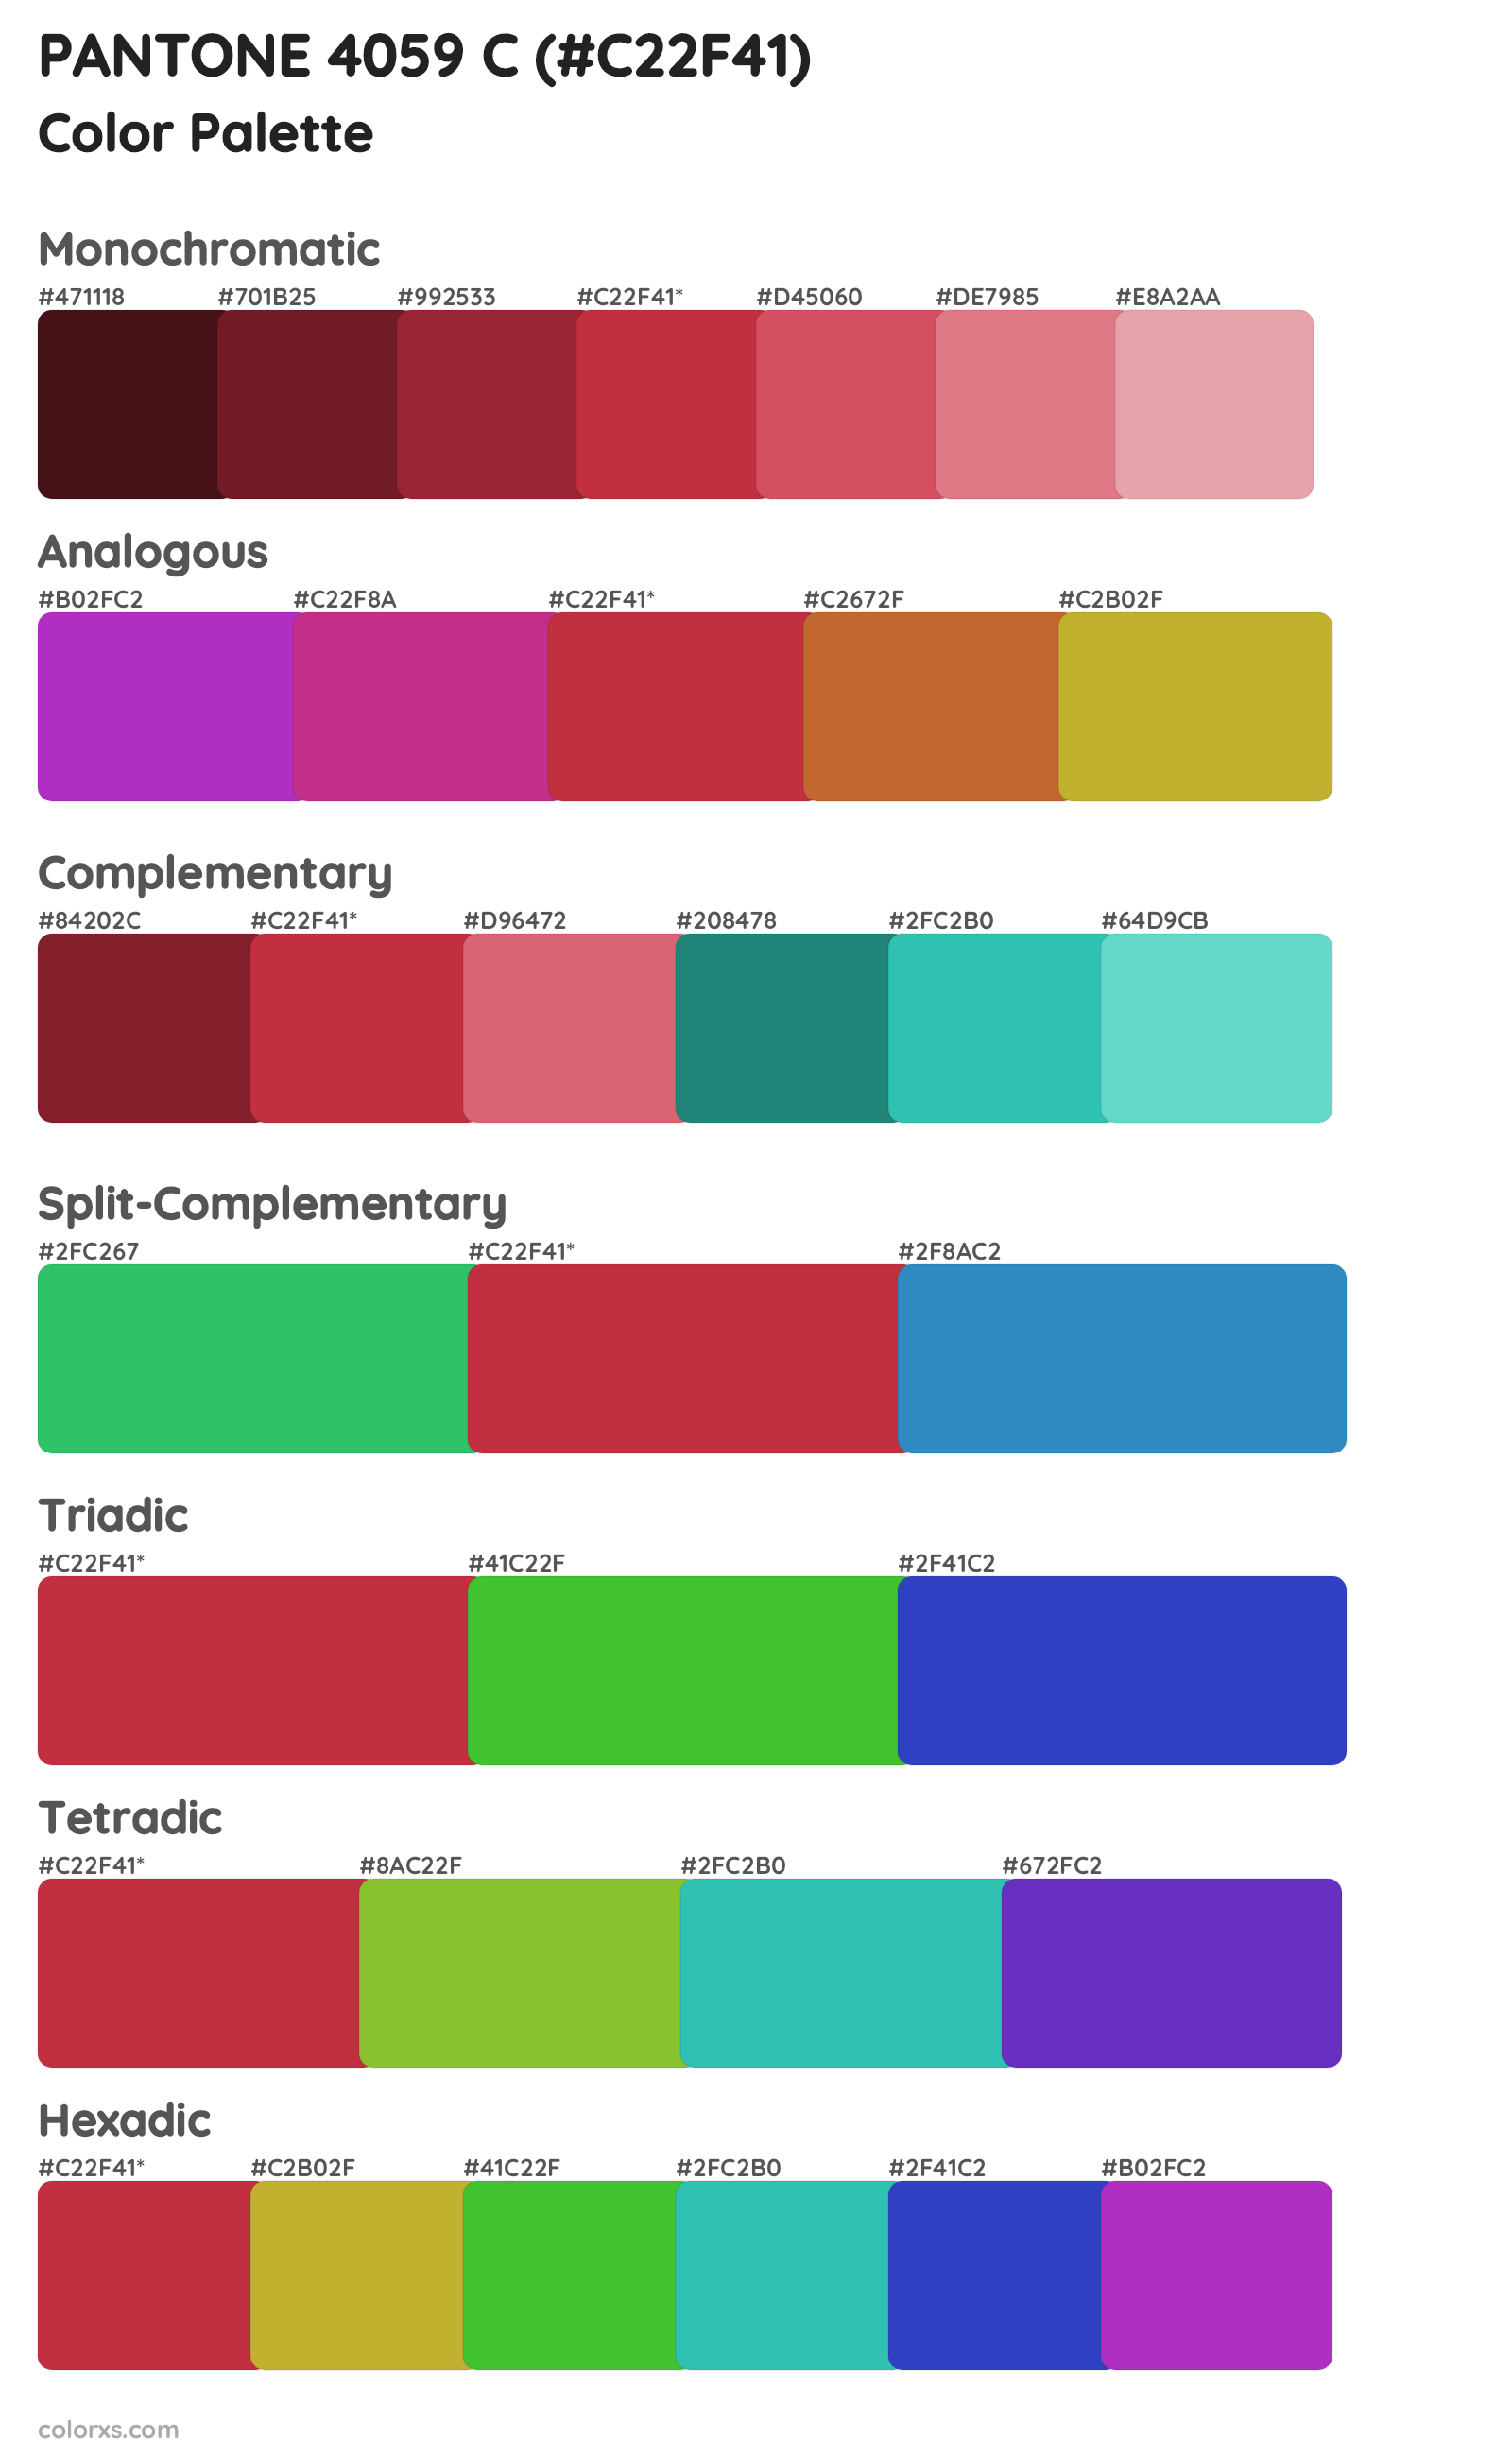 PANTONE 4059 C Color Scheme Palettes